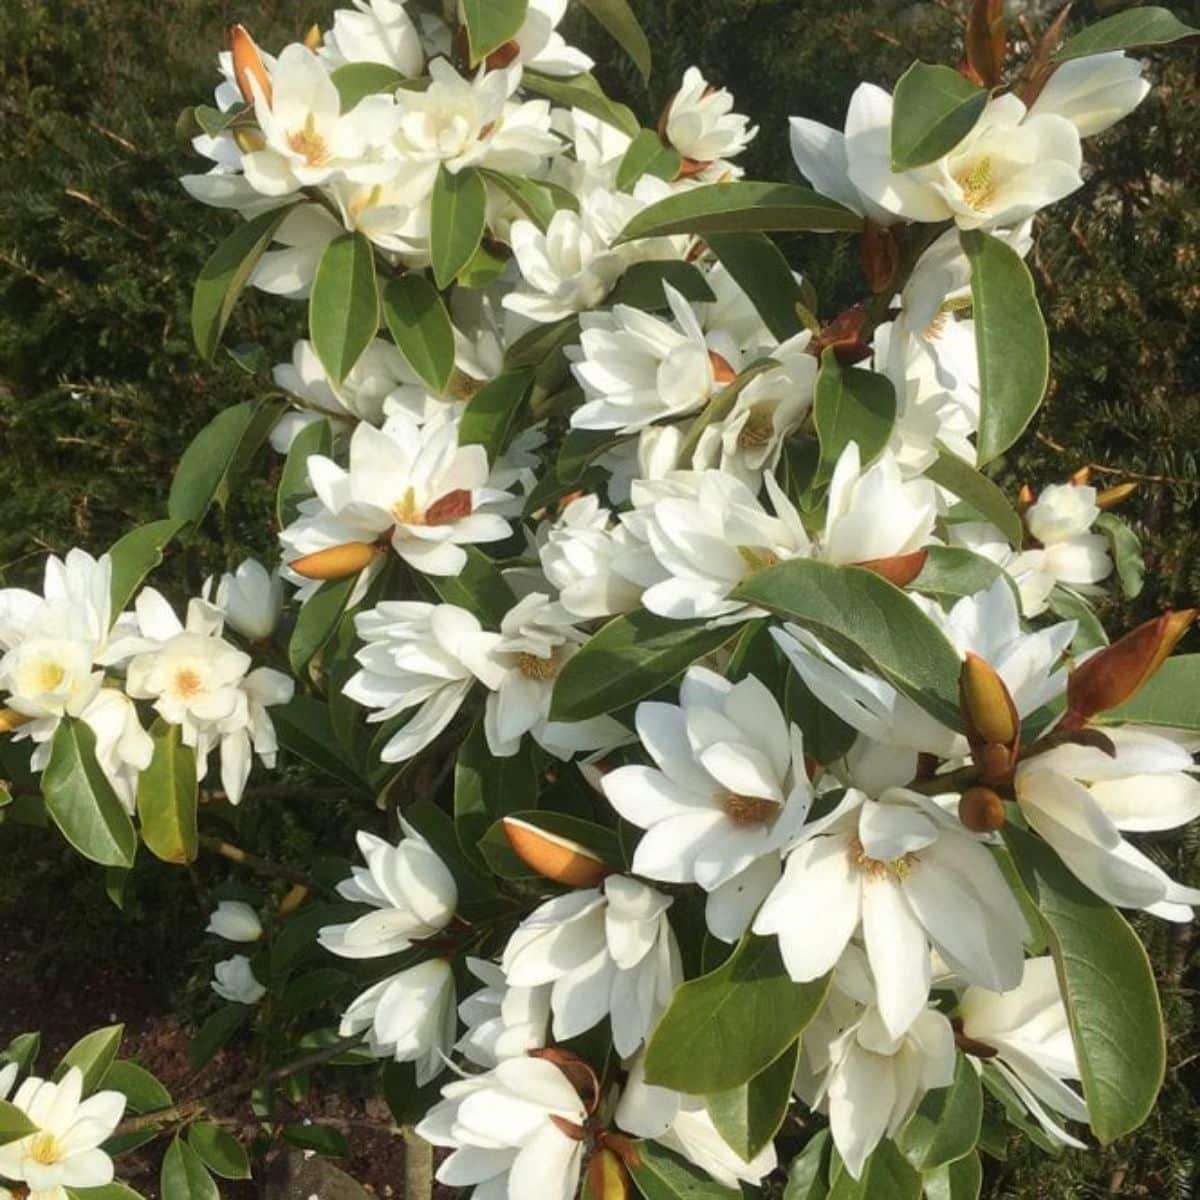 Fairy Magnolia White in white bloom.